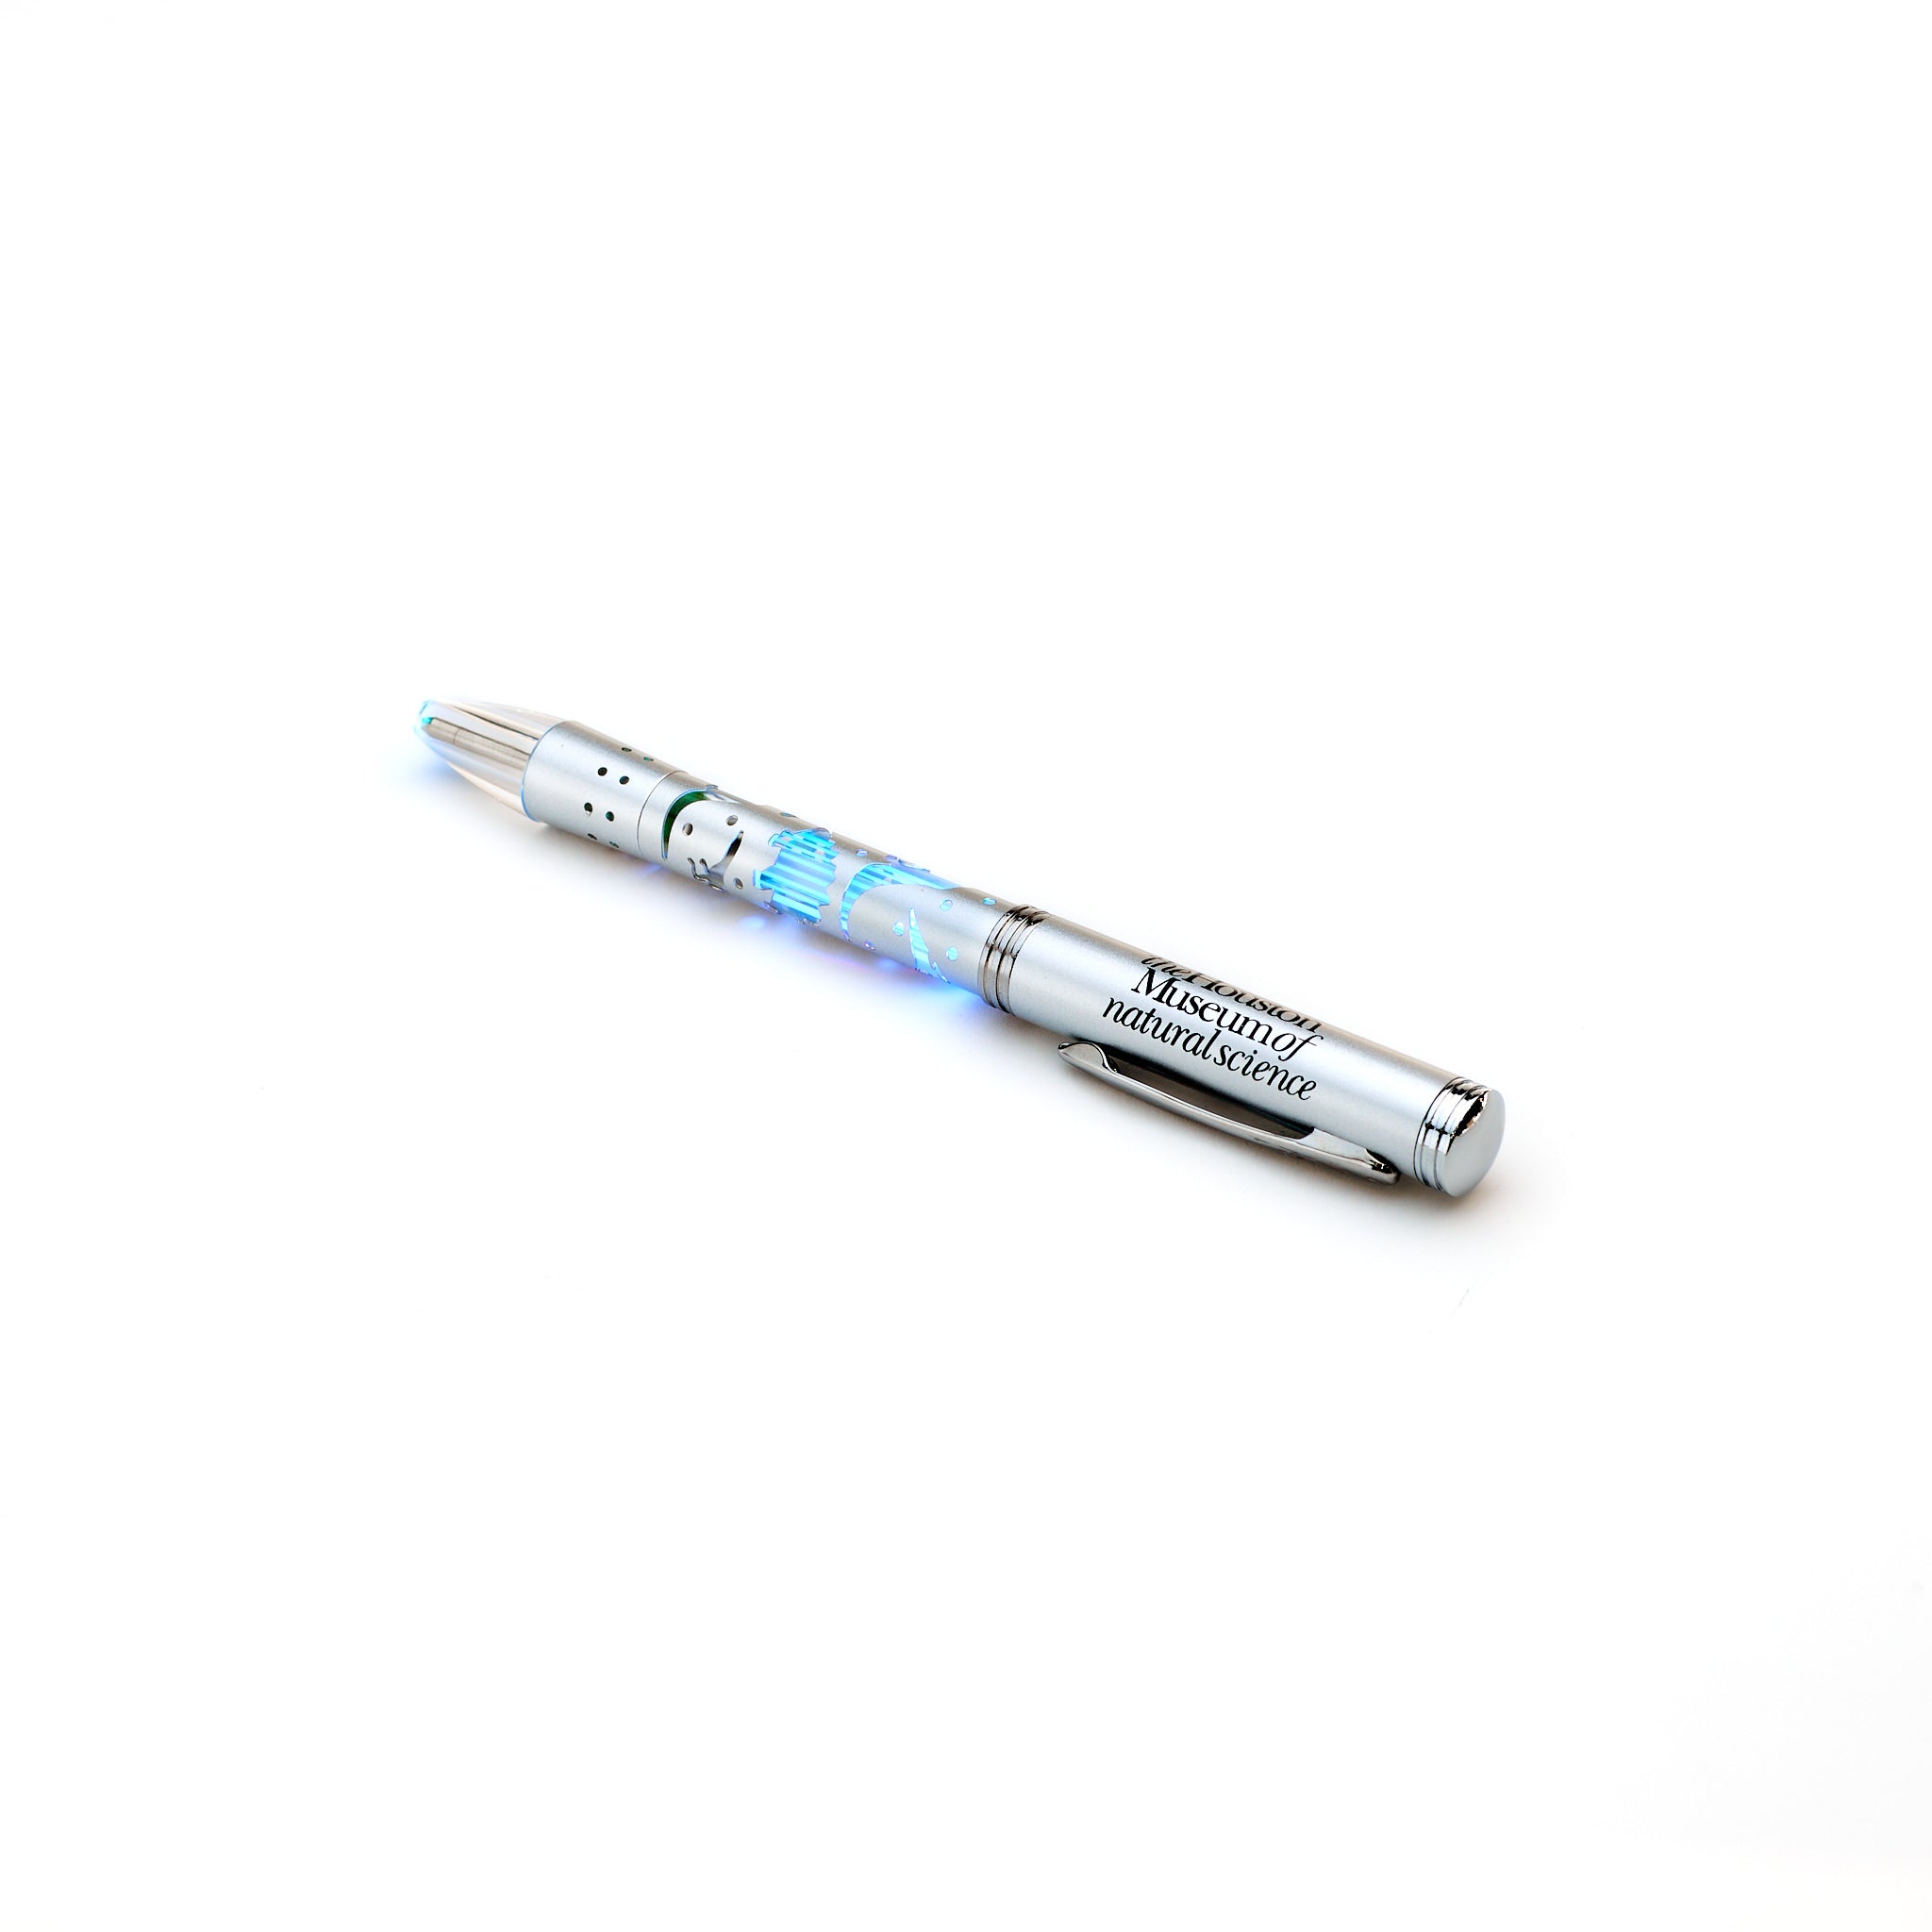 HMNS Light-Up Dinosaur Pen